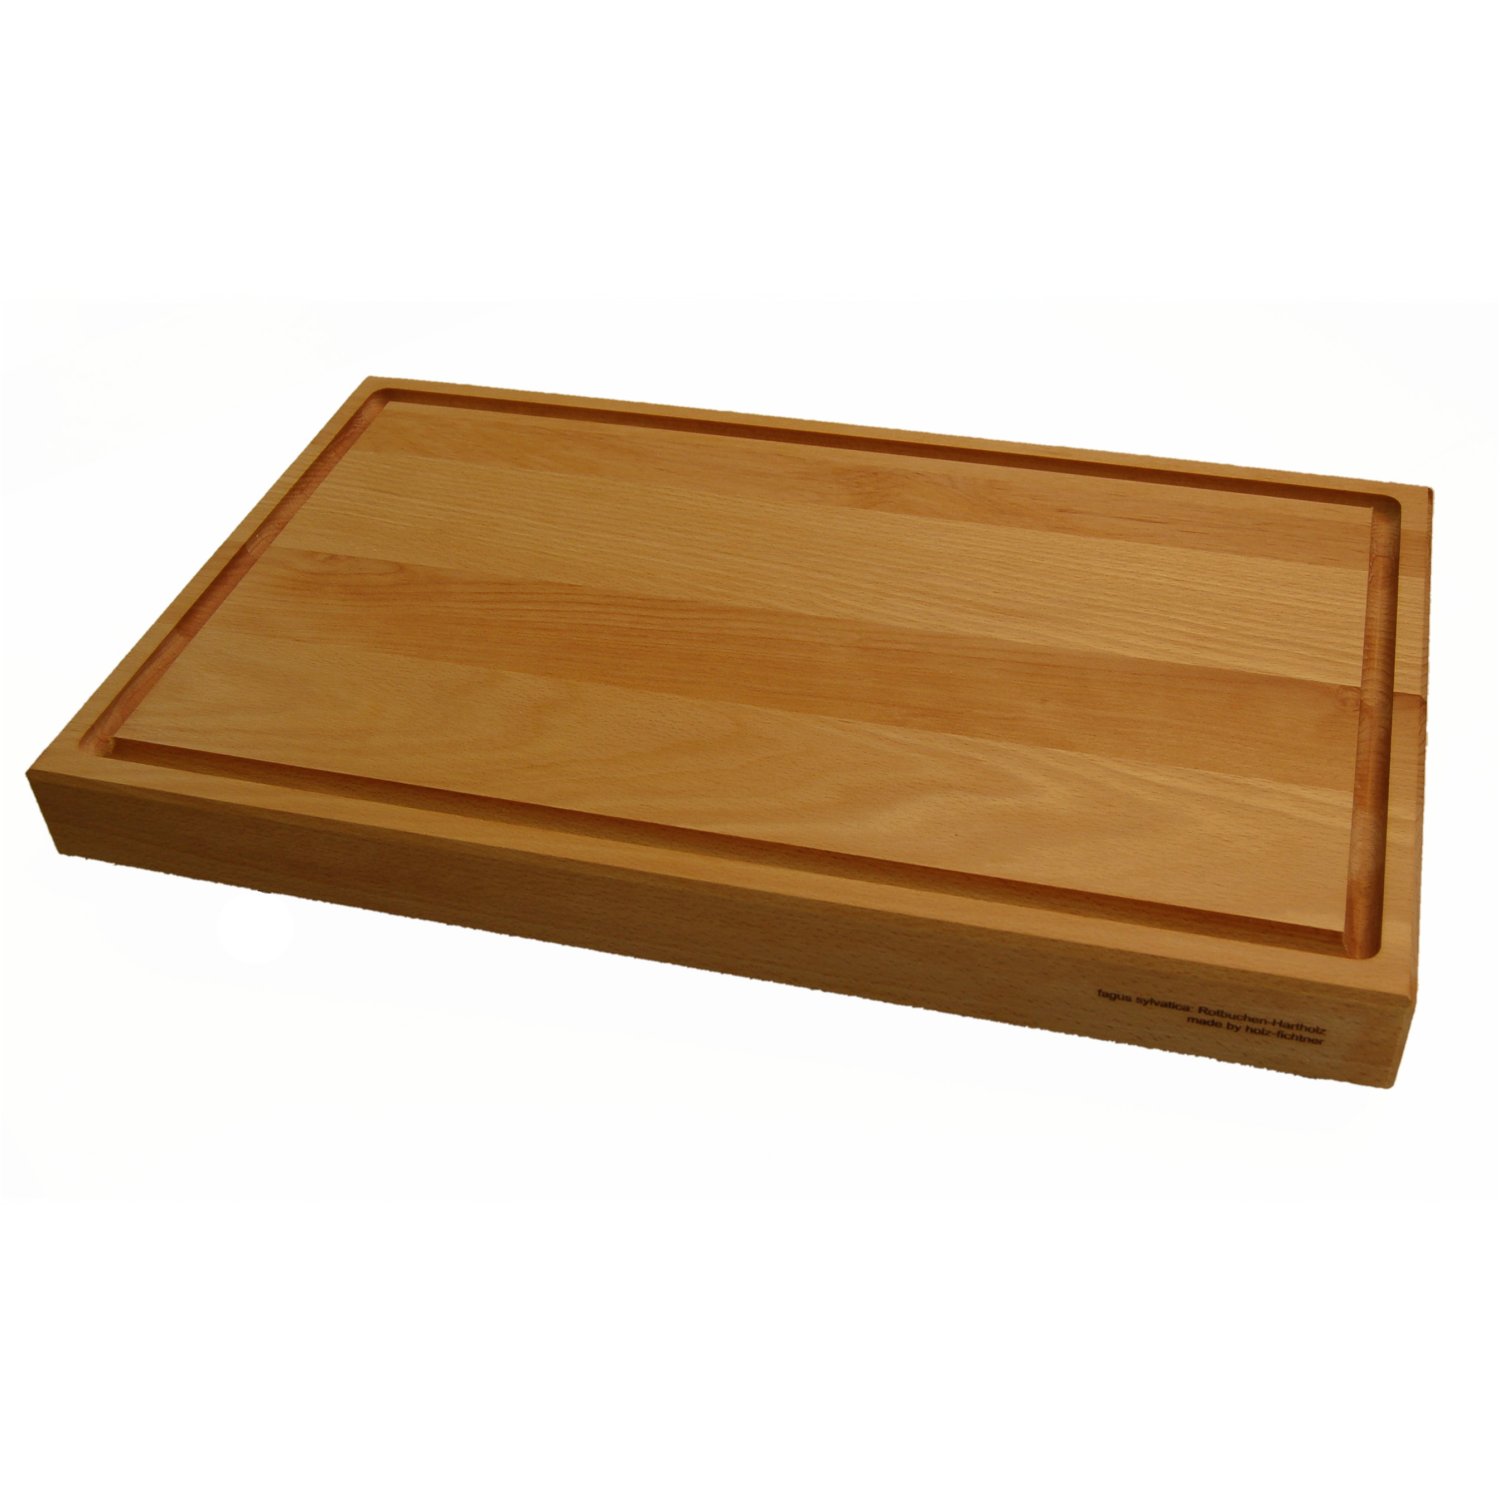 Wooden cutting board beech